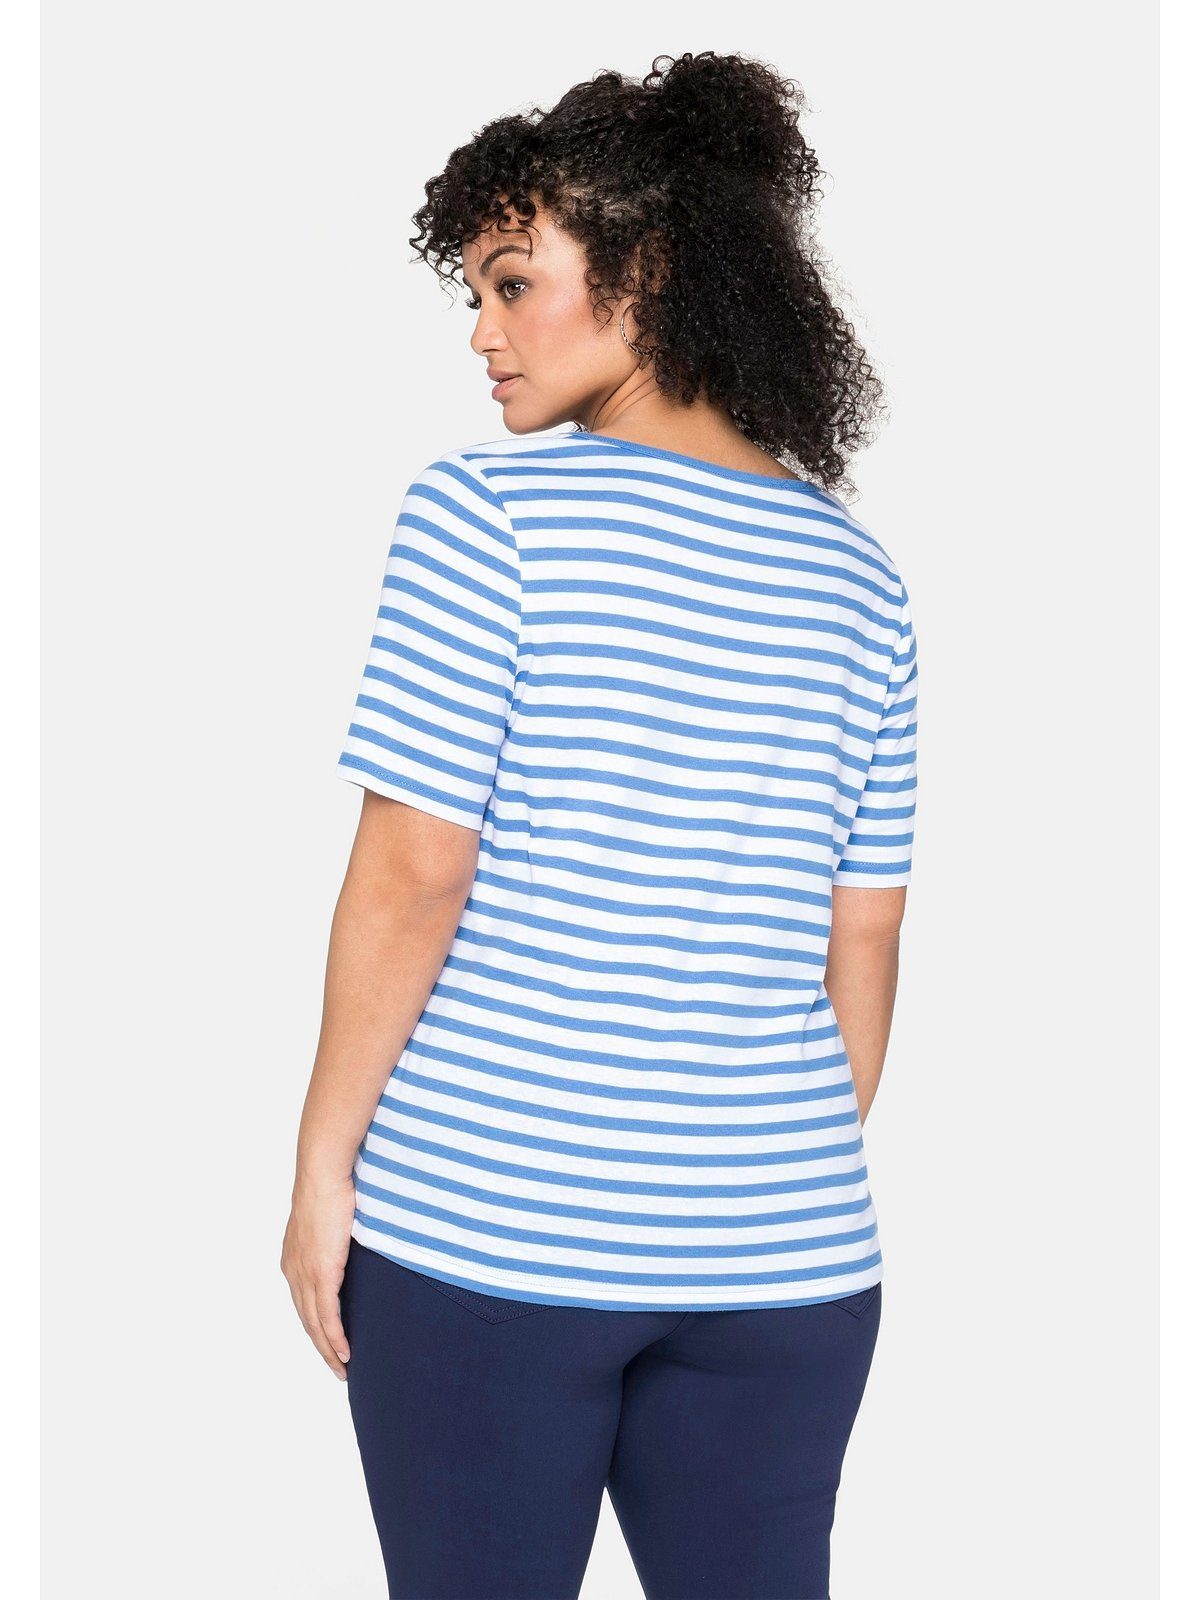 Sheego T-Shirt Große Größen mit garngefärbtem aus jeansblau-weiß Ringel, Rippware